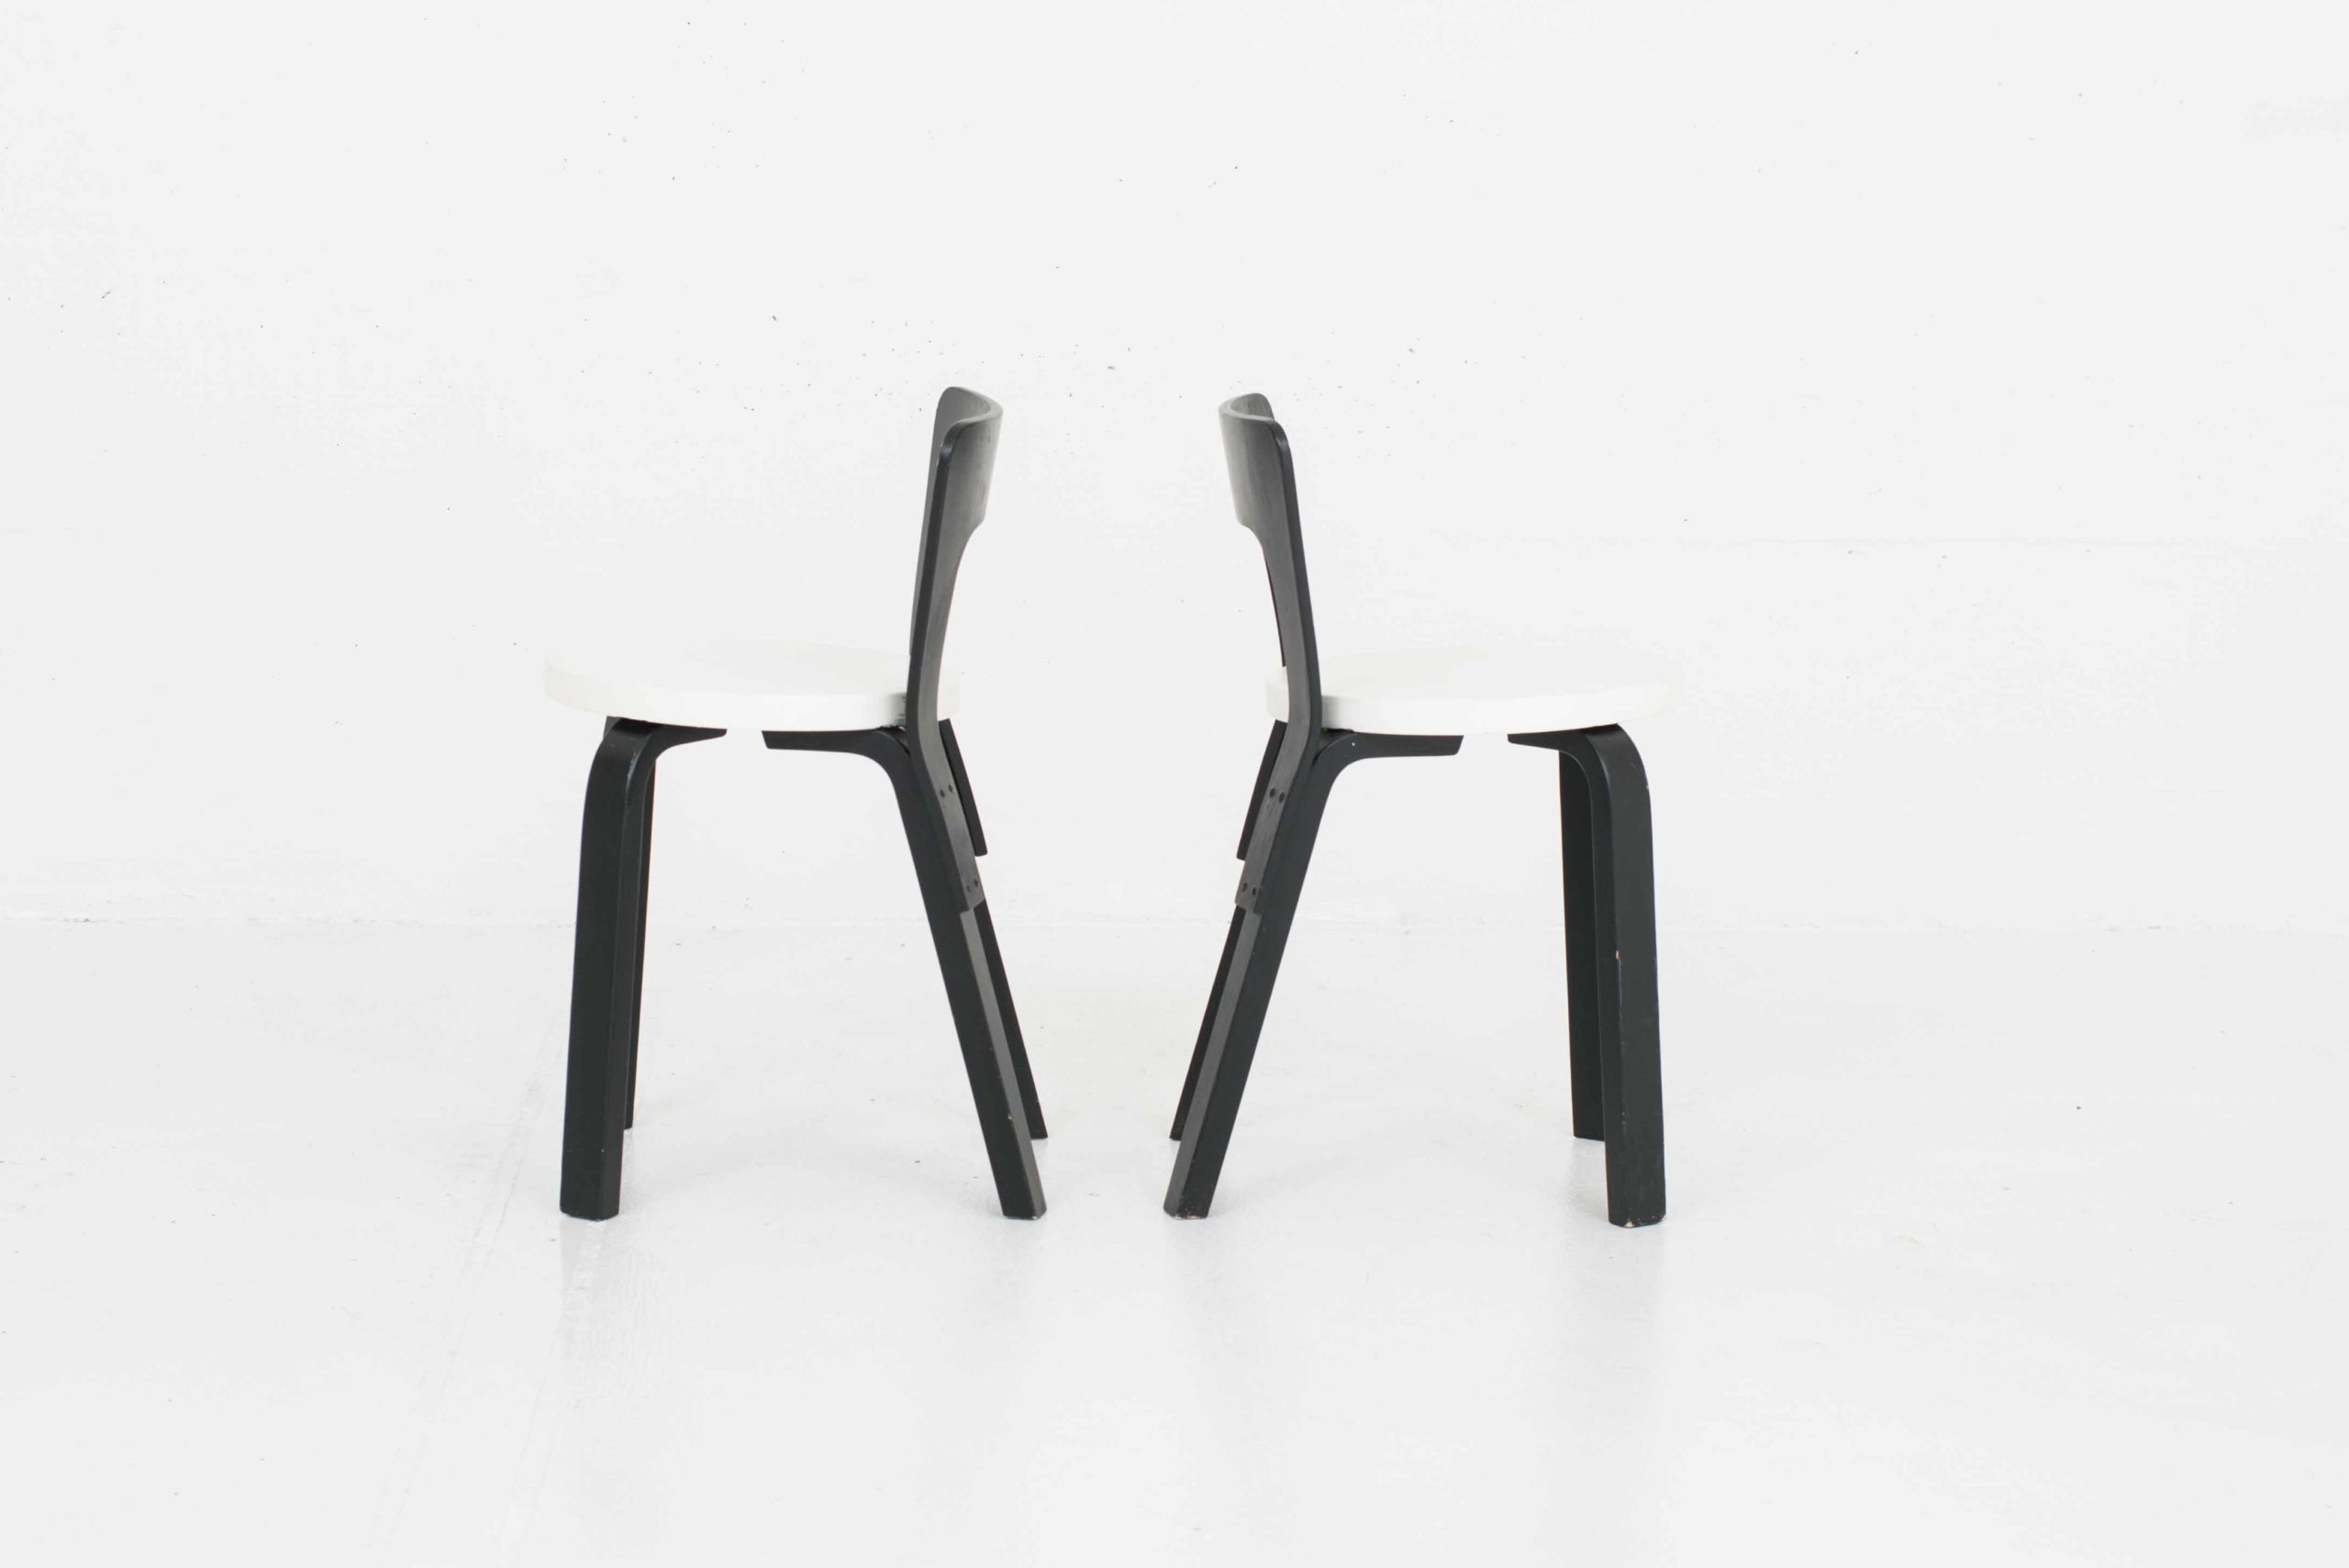 Artek Chair 65 von Alvar Aalto, im Zweierset-2